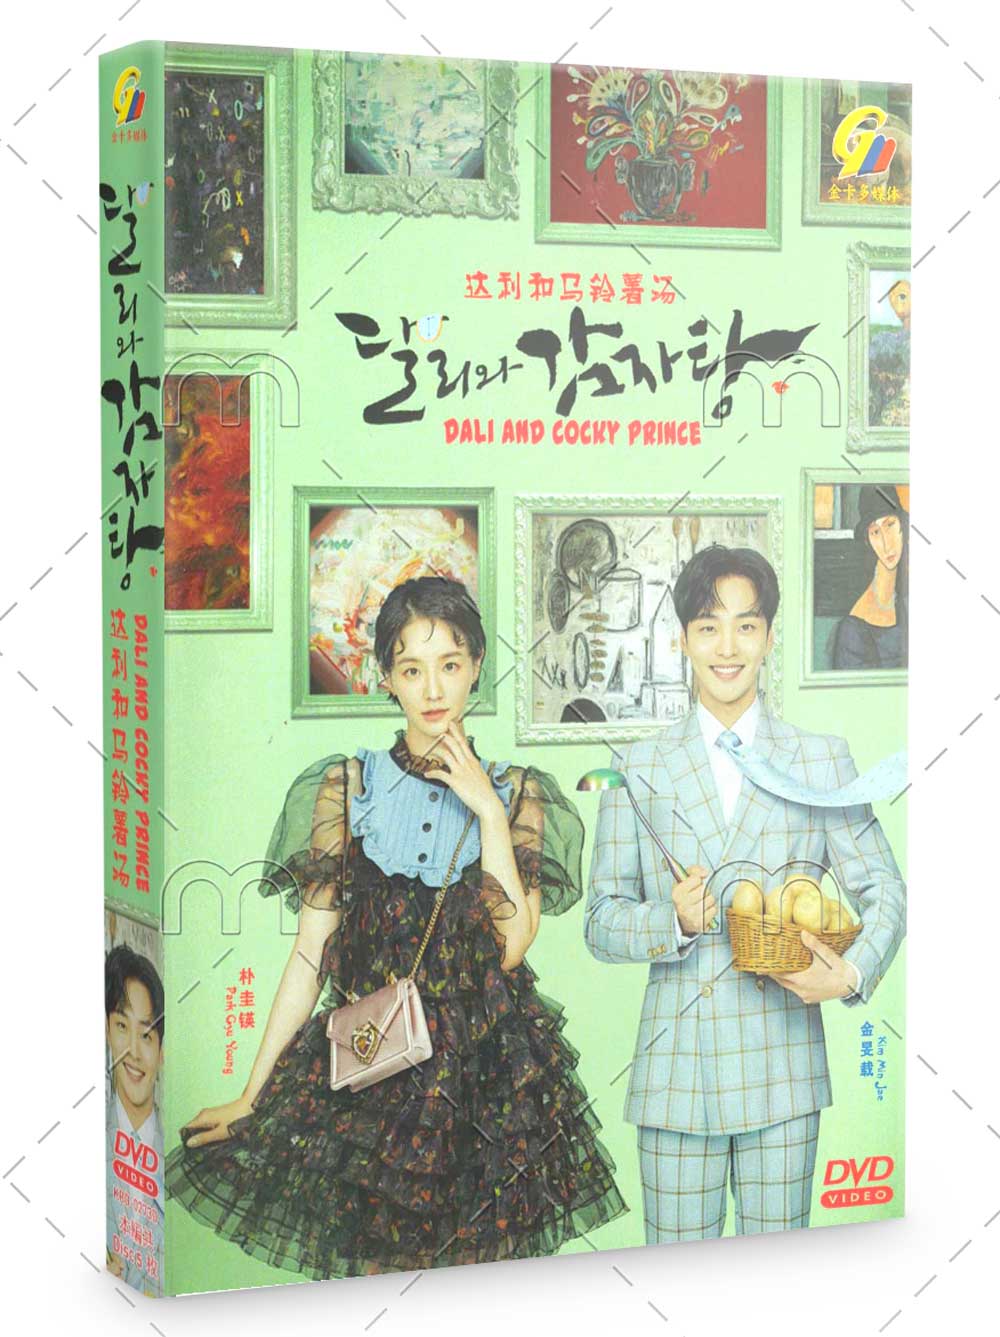 达利和土豆汤 (DVD) (2021) 韩国电影